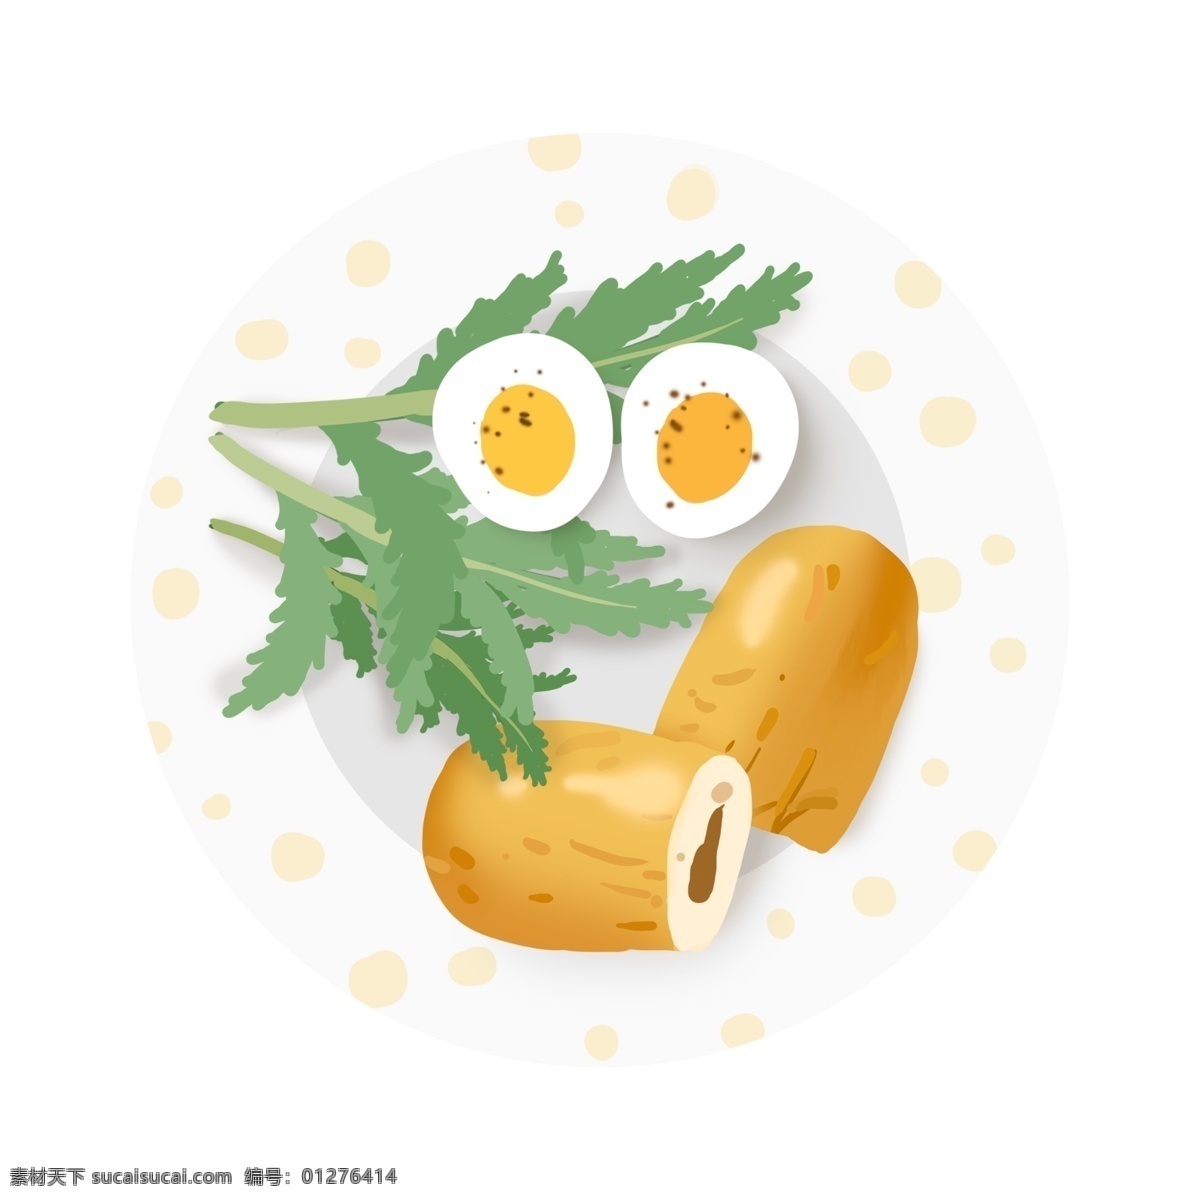 早餐 健康食谱 插画 早点 健康 食谱 扁平 轻食 面包 鸡蛋 盘子 蔬菜 减肥食谱 一日餐 饮食